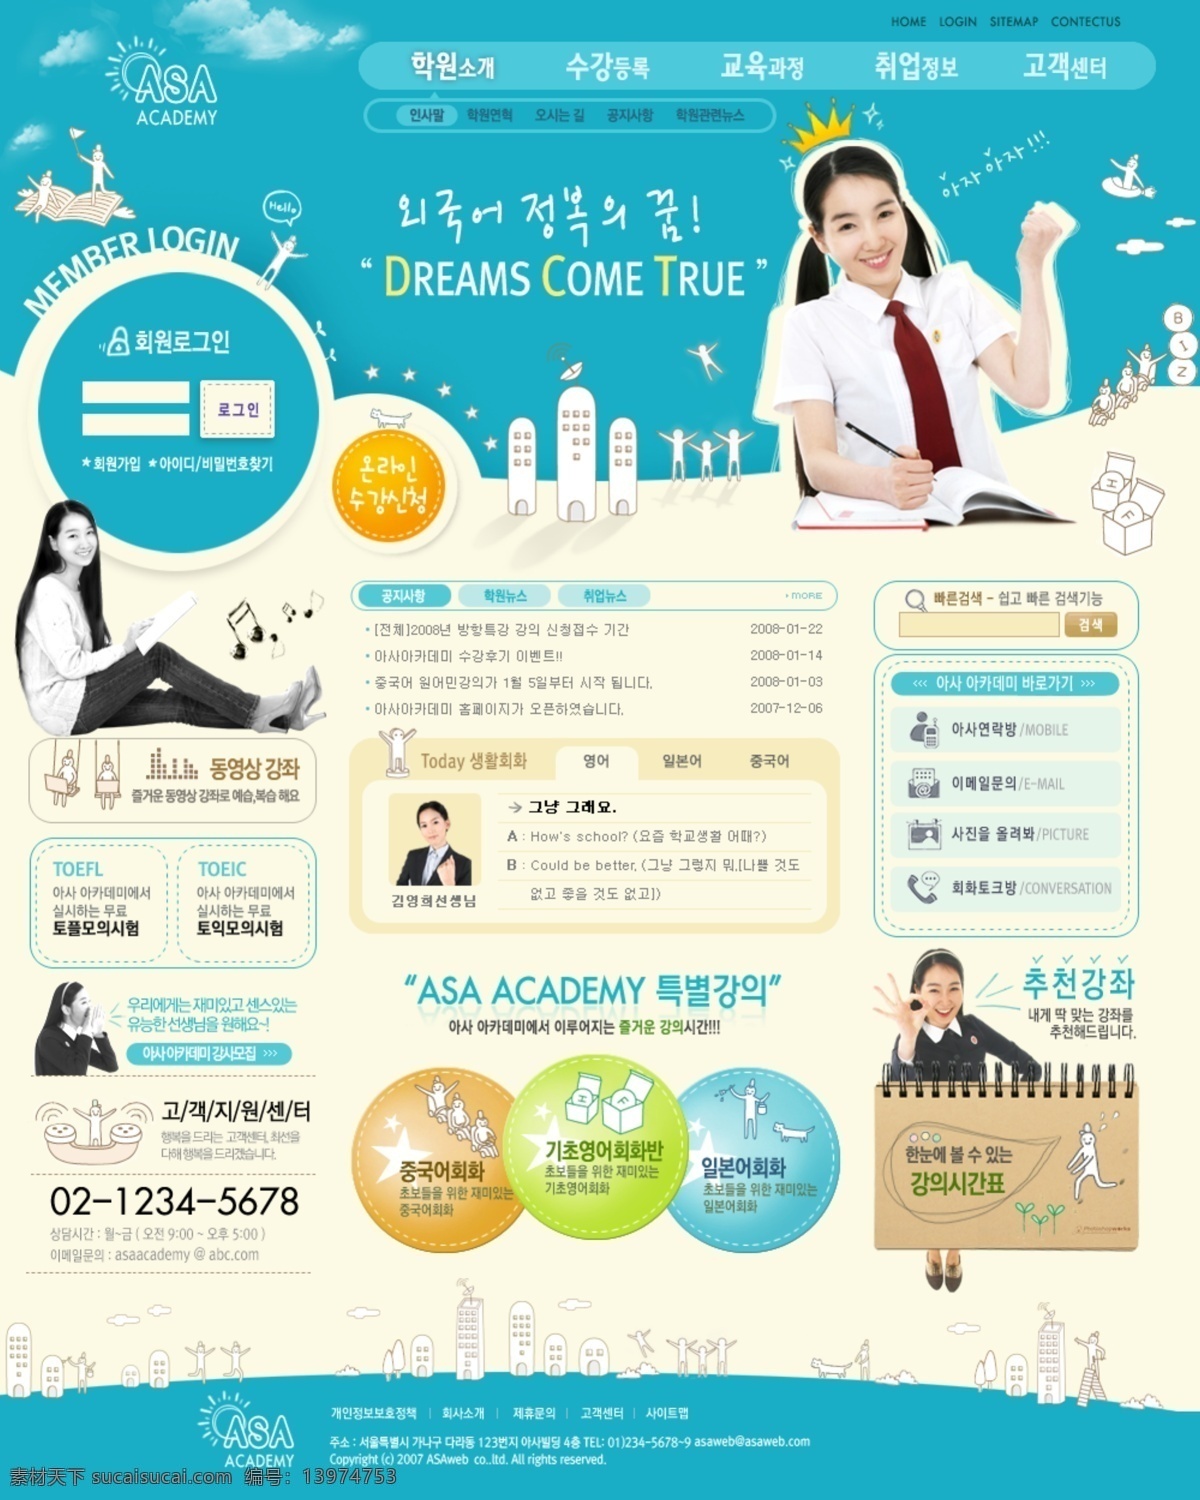 公主 校园 韩国 网页模板 按钮 韩国网页 绿色 内容页 设计模板 校园图片 公主学生 最终页 结果页 网页素材